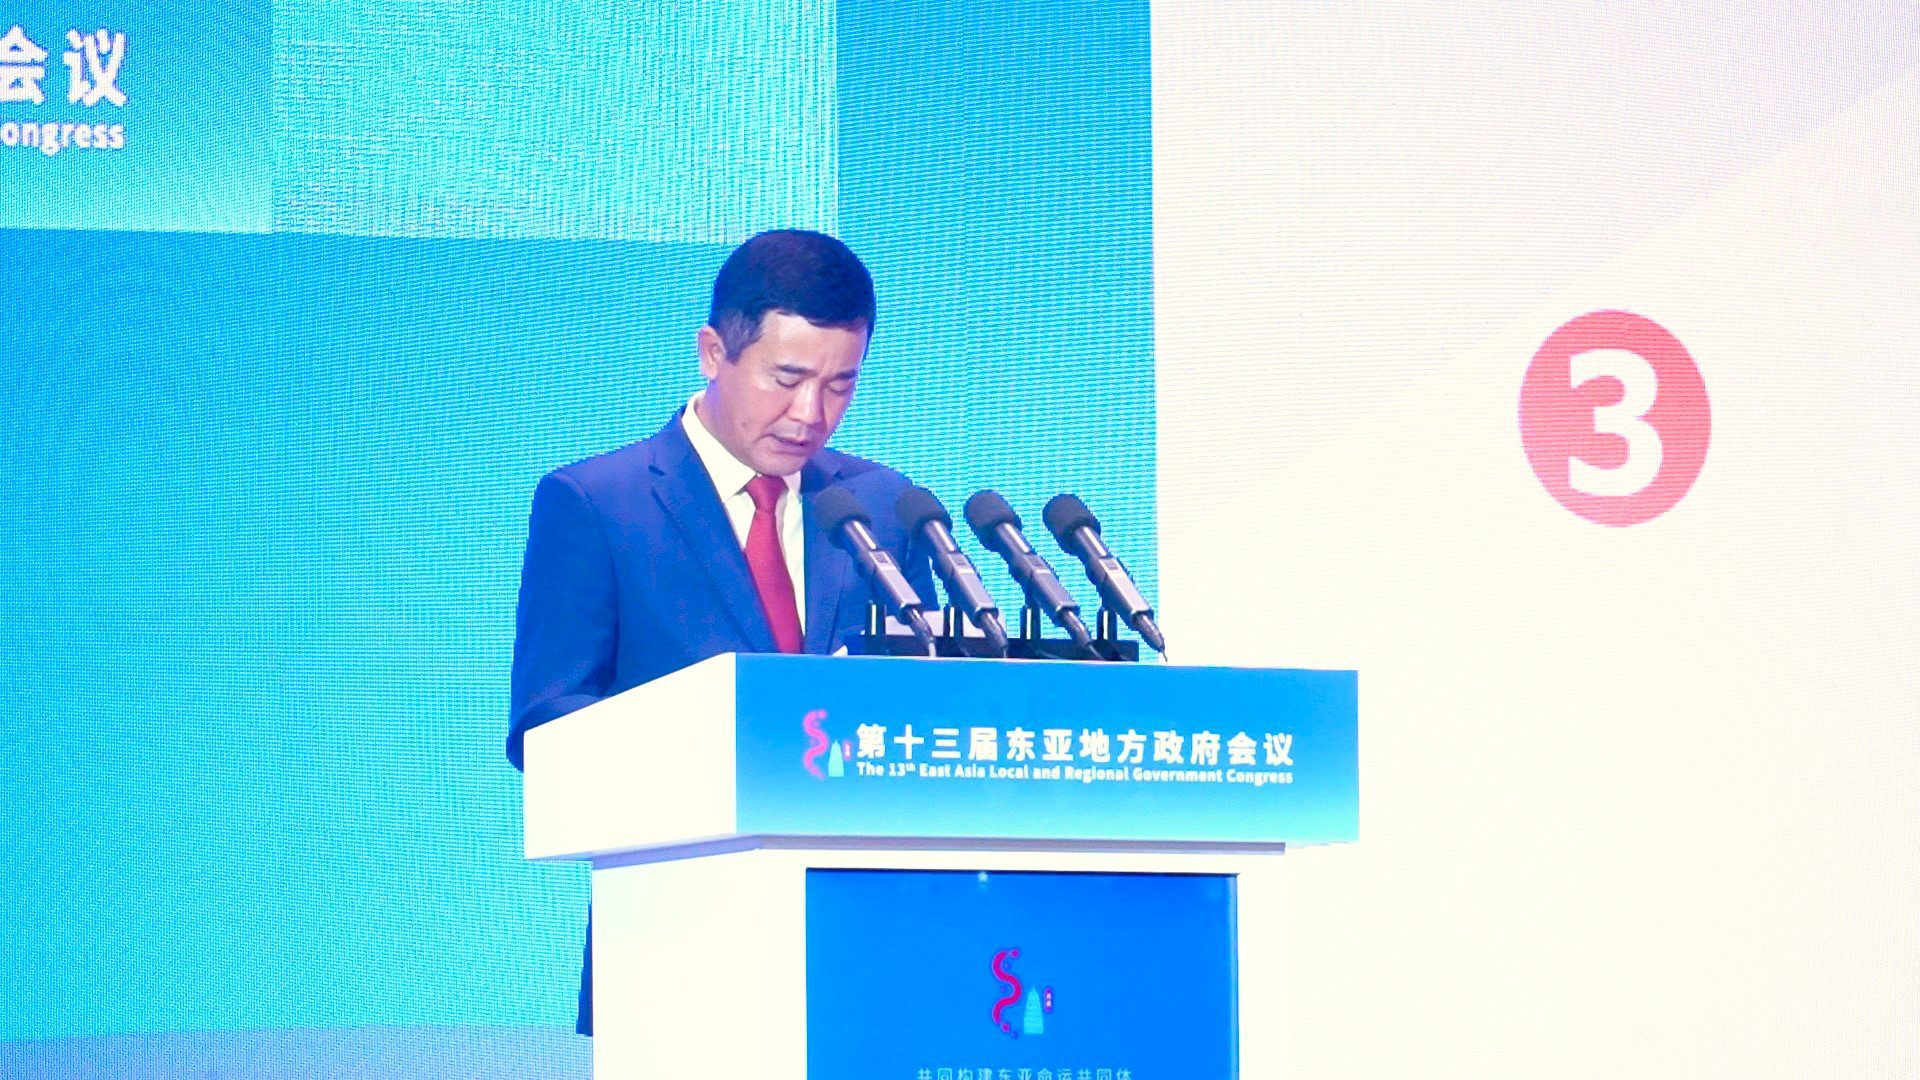 Phó Chủ tịch UBND tỉnh Phú Thọ Hồ Đại Dũng tham dự Hội nghị Chính quyền địa phương khu vực Đông Á lần thứ 13 tại Trung Quốc